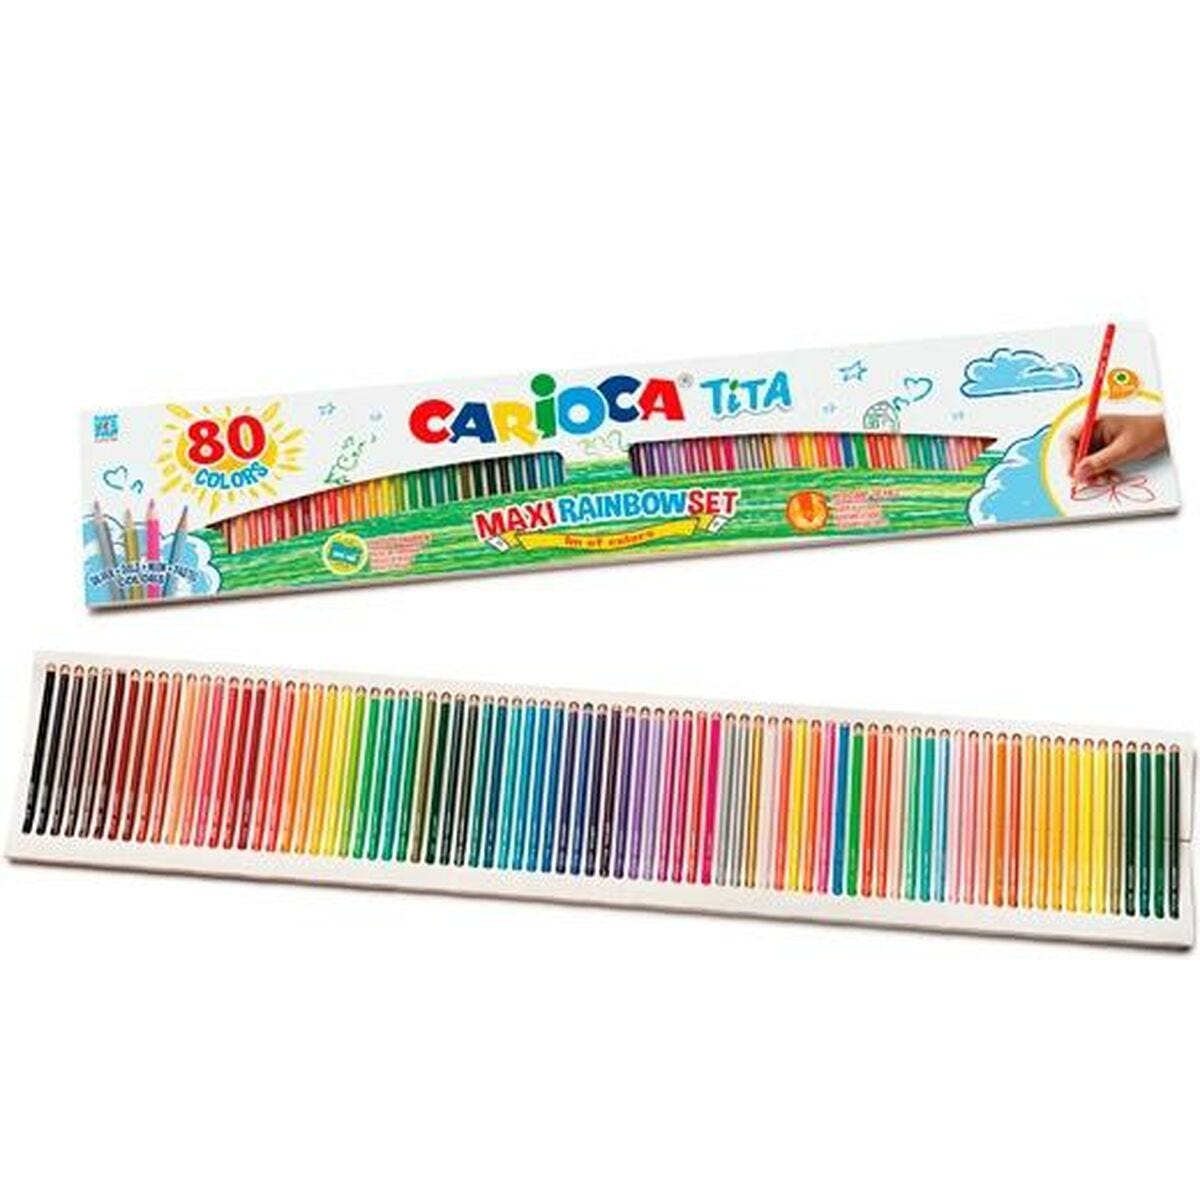 Matite colorate Carioca Tita Multicolore 80 Pezzi